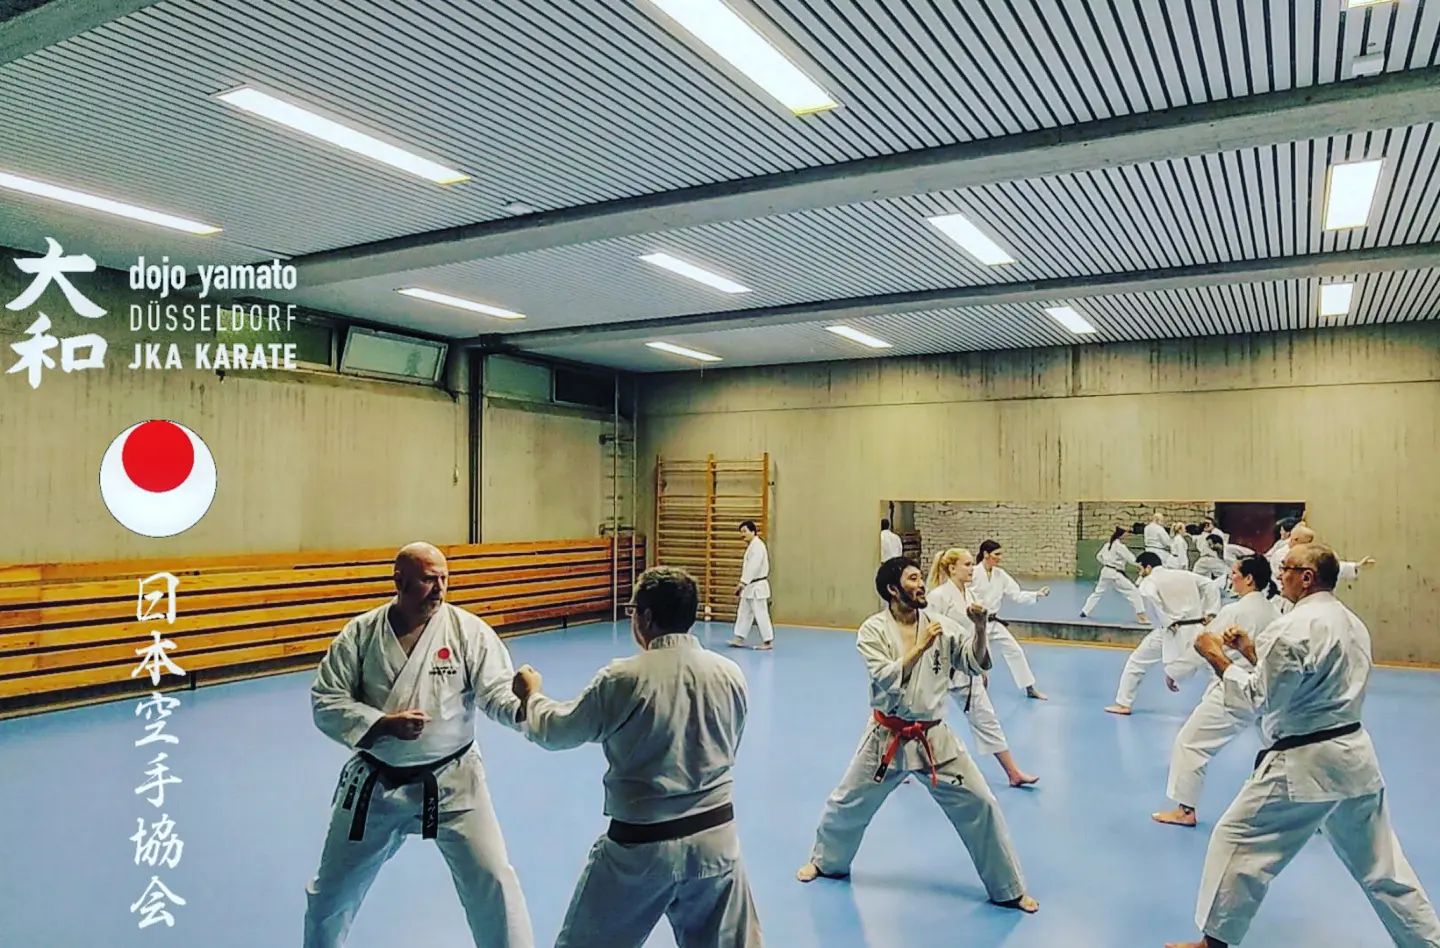 Kumite Training im Dojo Yamato Düsseldorf e.V.🥋
Trainer Keigo Shimizu 🇯🇵
.
.
.
.
.
.
.
.
.
#karate #training #fun #jka #djkb #kihon #kata #kumite #düsseldorf #duesseldorf #japan #sport #sportmotivation #shotokan #traditional #nrw #yamatoduesseldorf #fitness #fitnessmotivation #jkaKarate #jkakaratedo #neuss #ratingen #hilden #leverkusen #kaarst #selbstbstbewusstsein #selbstvertrauen